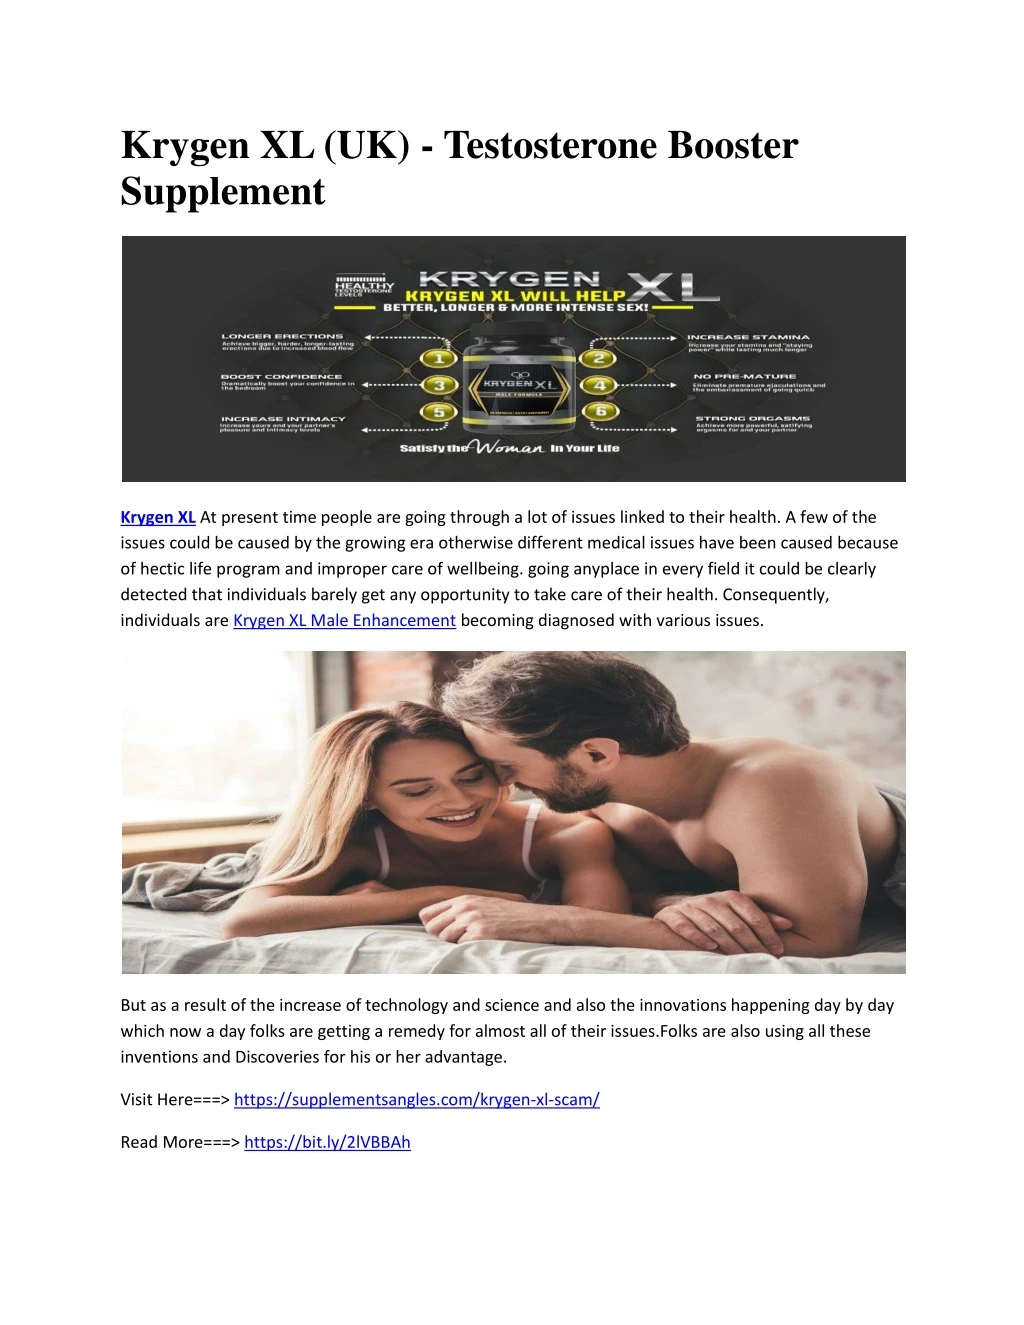 krygen xl uk testosterone booster supplement